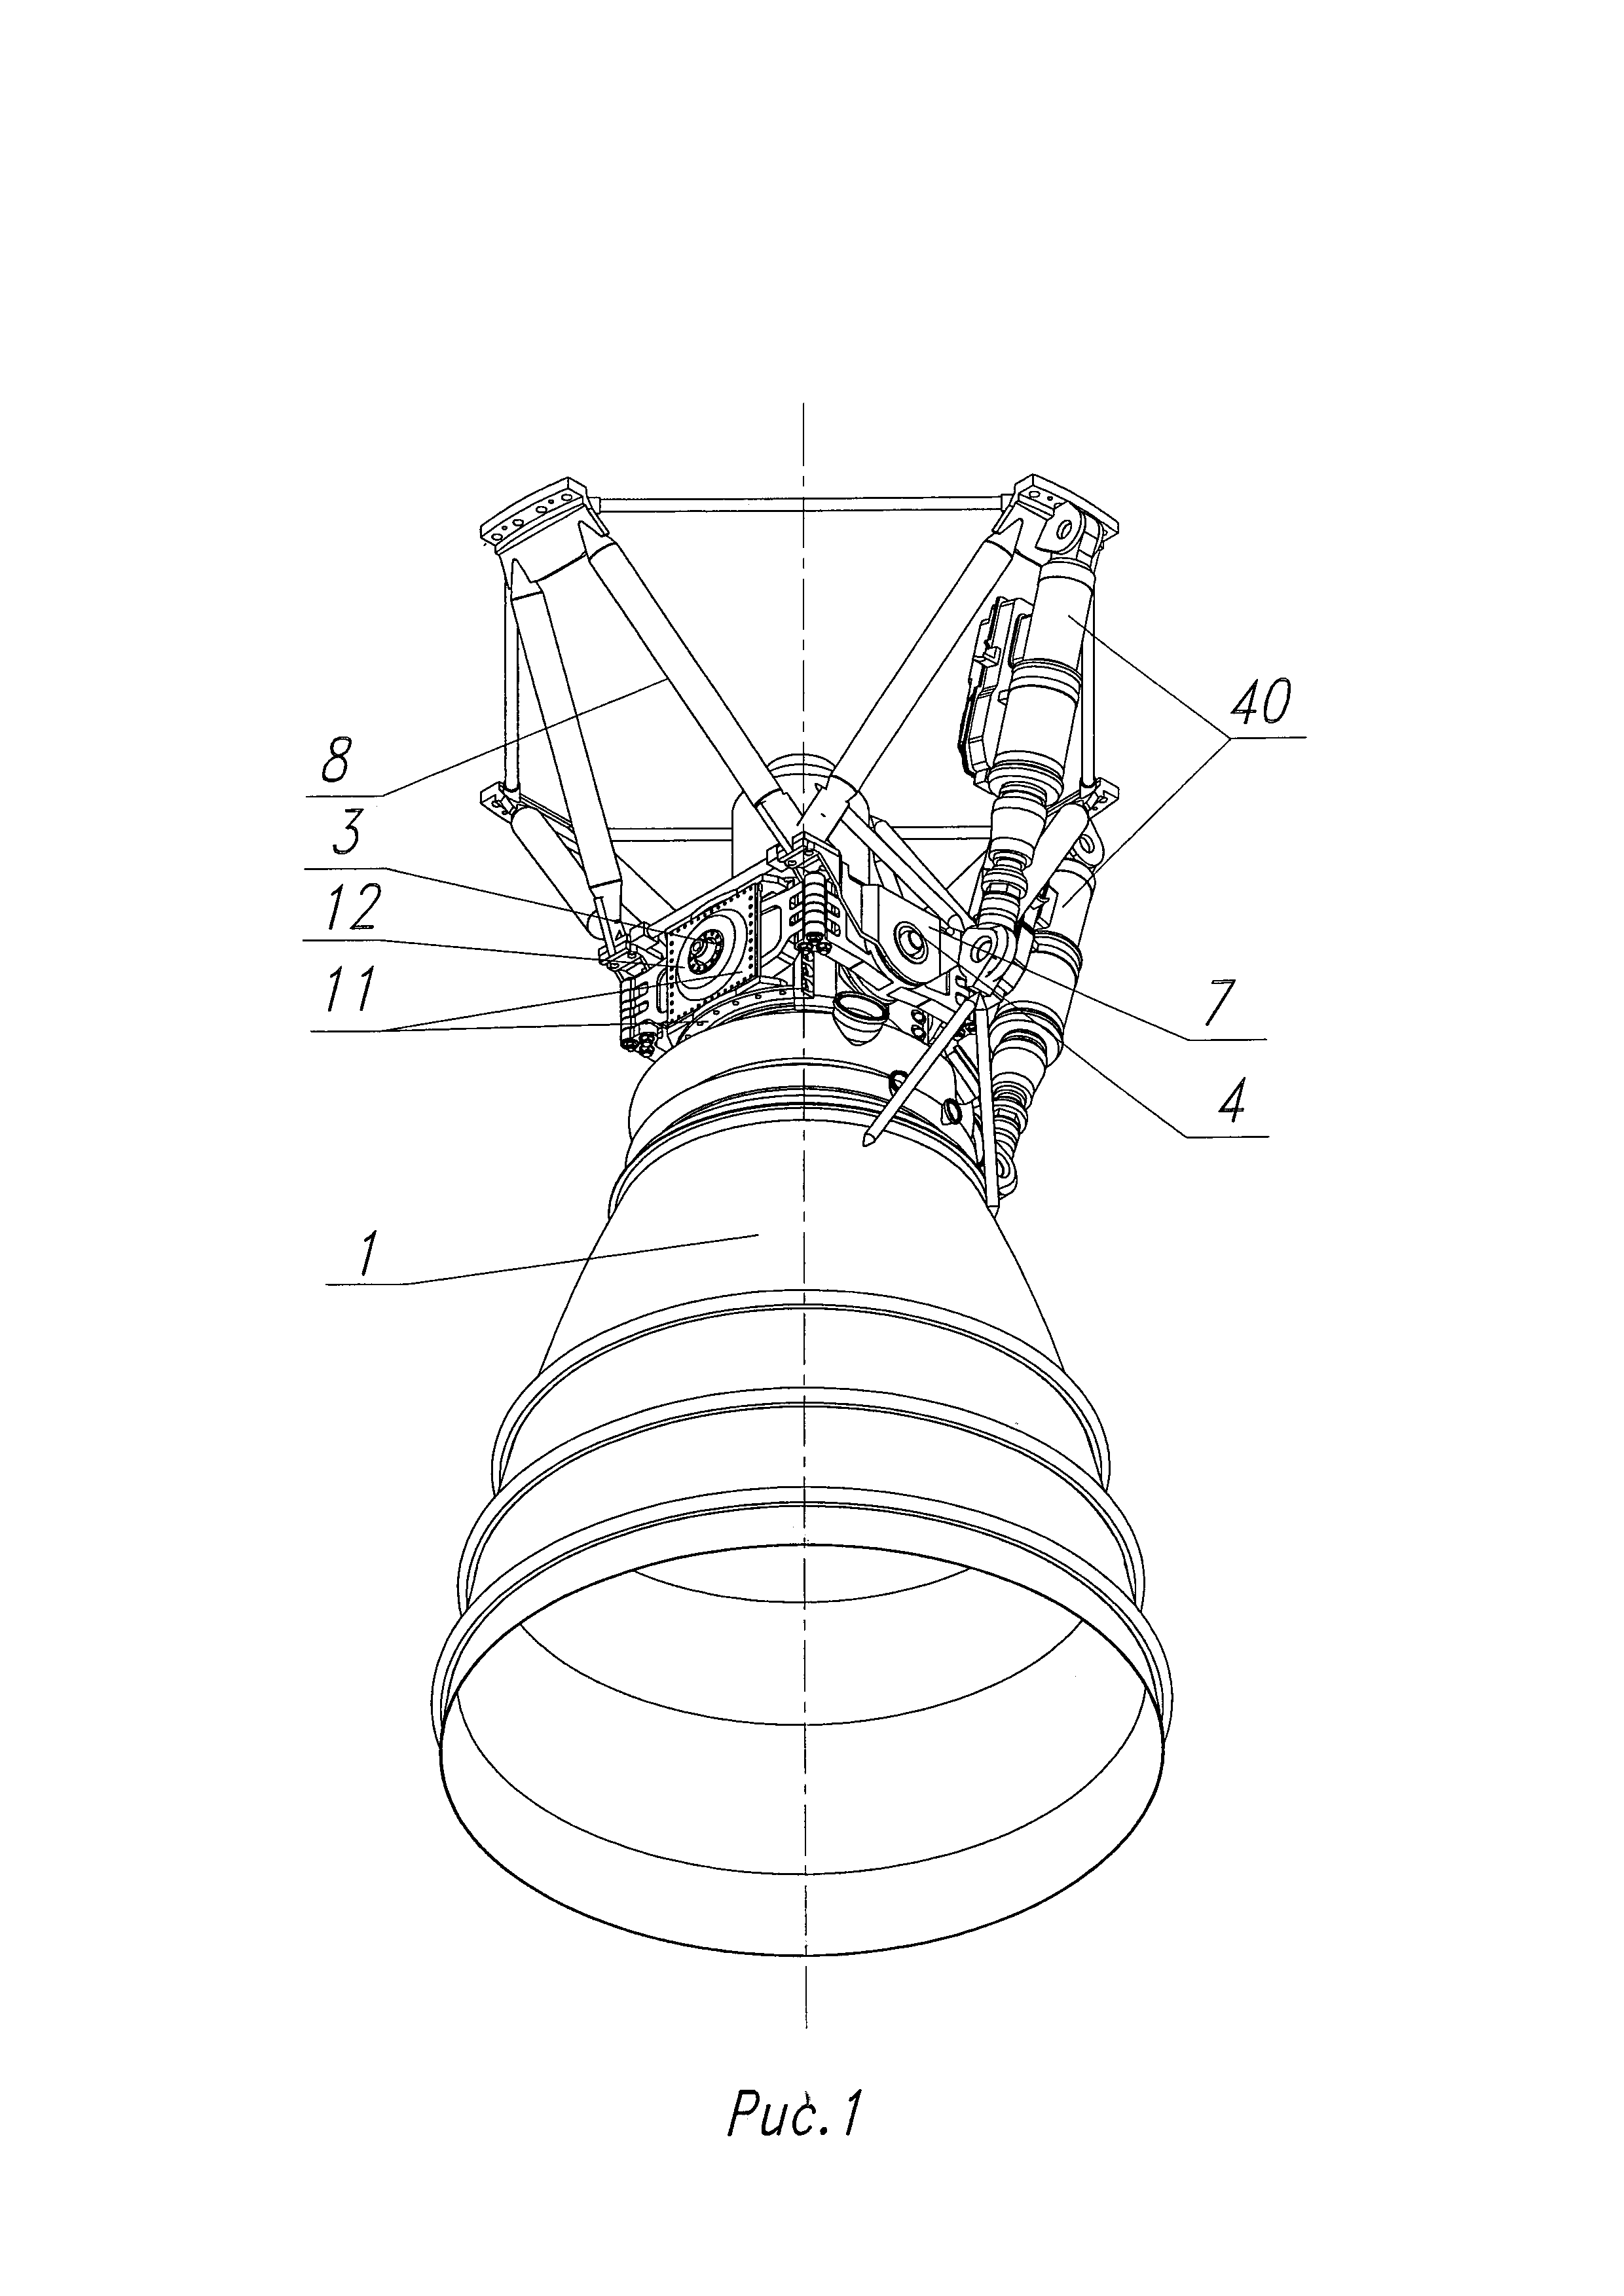 RU2095607C1 - Жидкостный ракетный двигатель на криогенном топливе - Google Patents